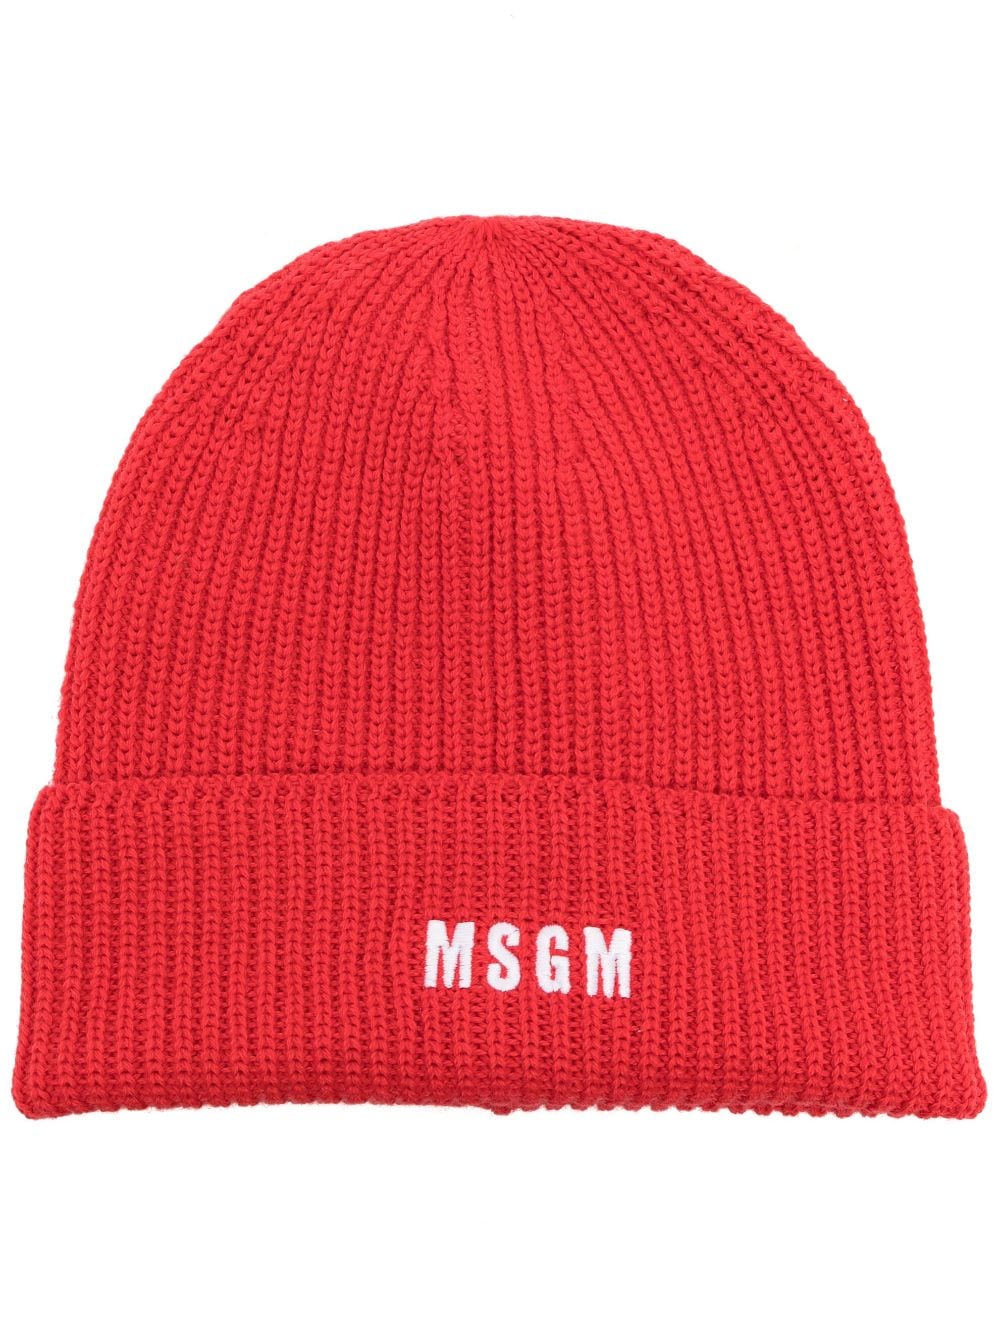 MSGM logo-embroidered knitted beanie von MSGM